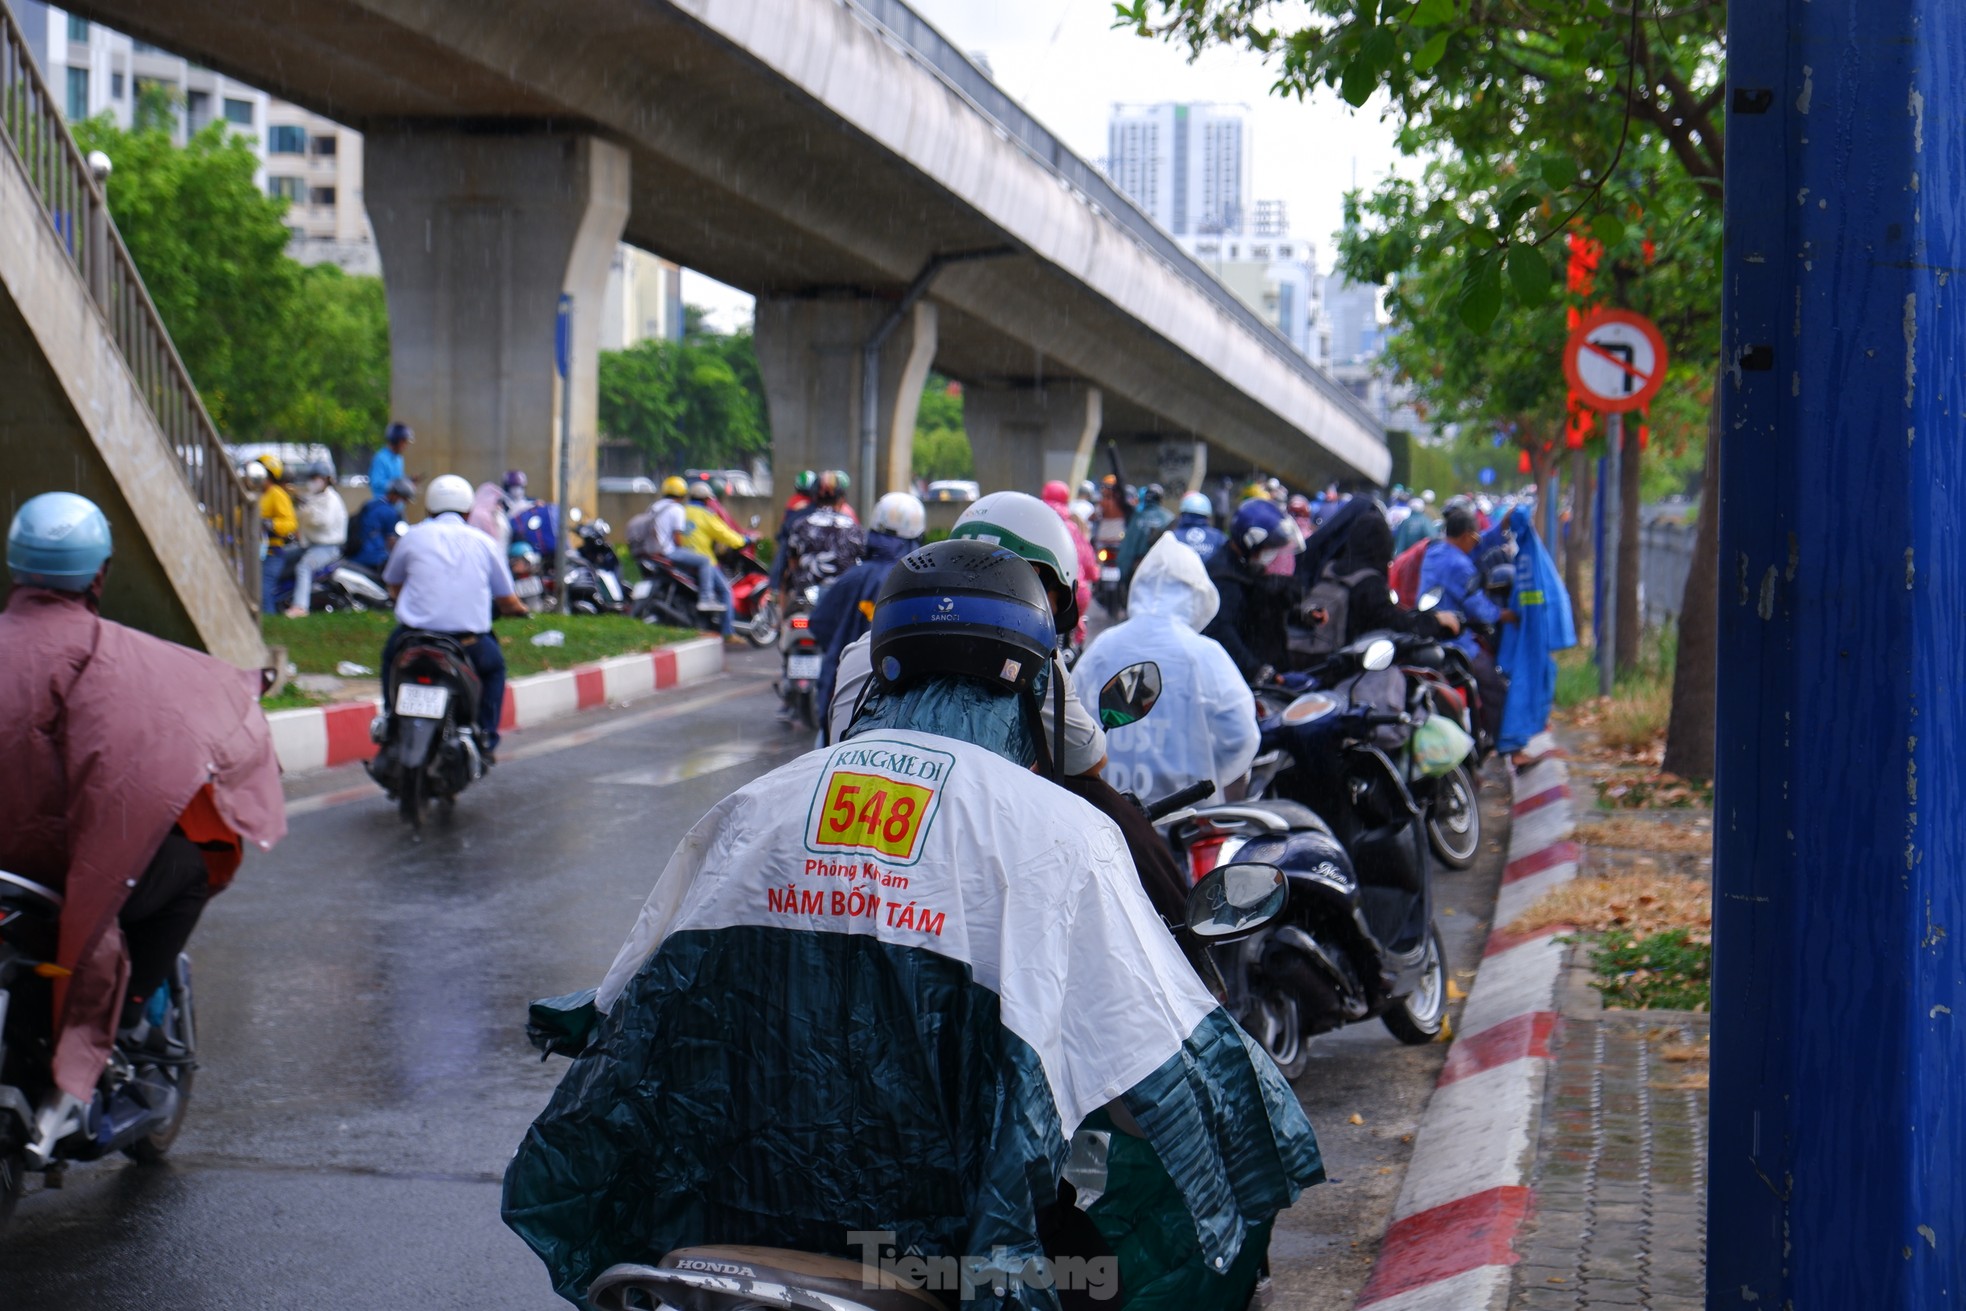 TPHCM bất chợt 'mưa vàng', nhiều người bị té ngã vì đường trơn ảnh 10